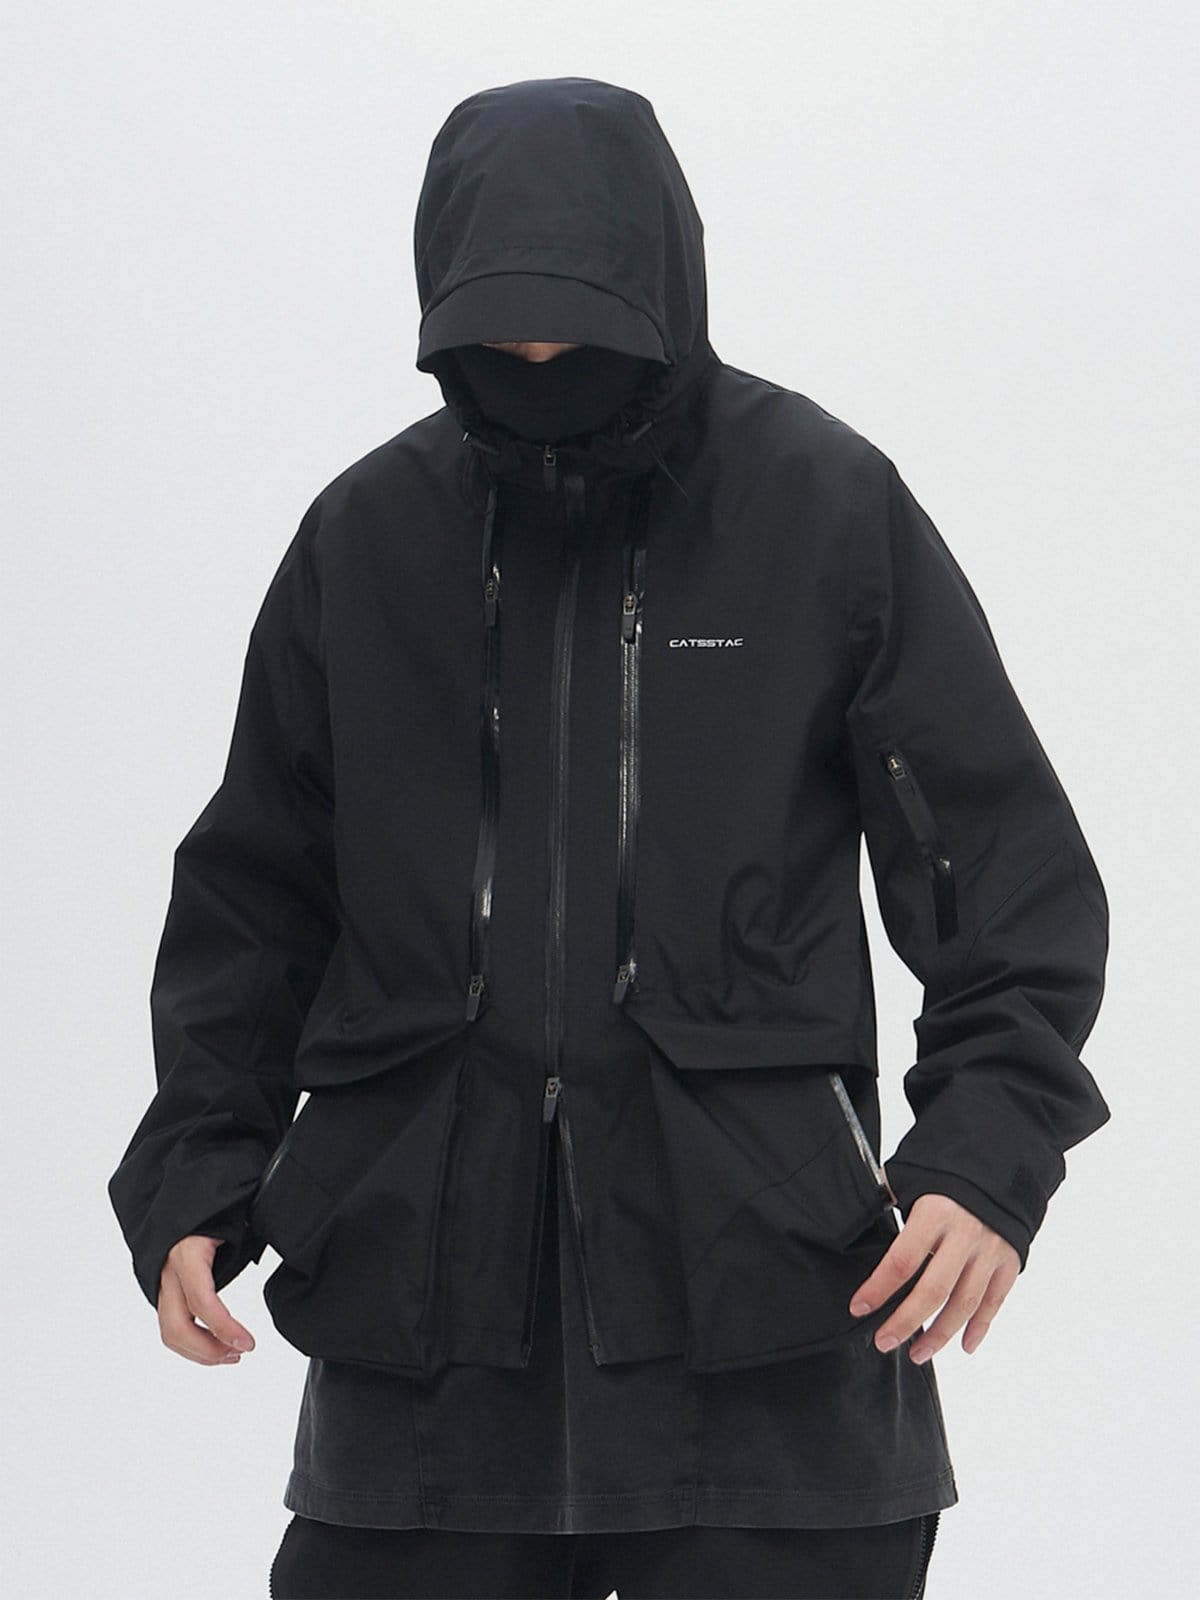 Multi Zip Up Waterproof Jacket Streetwear Brand Techwear Combat Tactical YUGEN THEORY